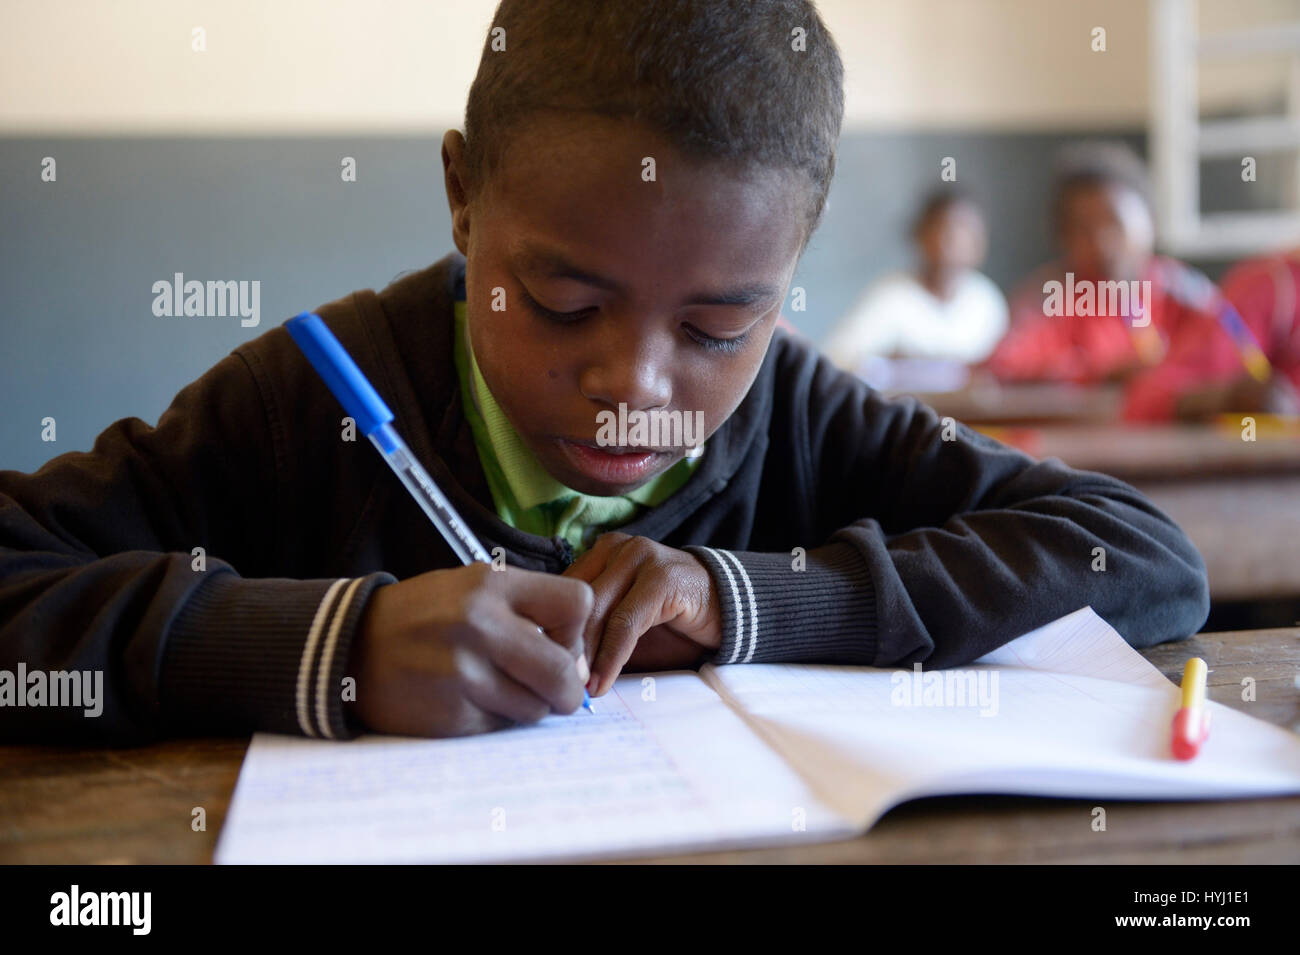 Garçon, étudiant l'écriture, 12 ans, école primaire, Fianarantsoa, Madagascar Banque D'Images